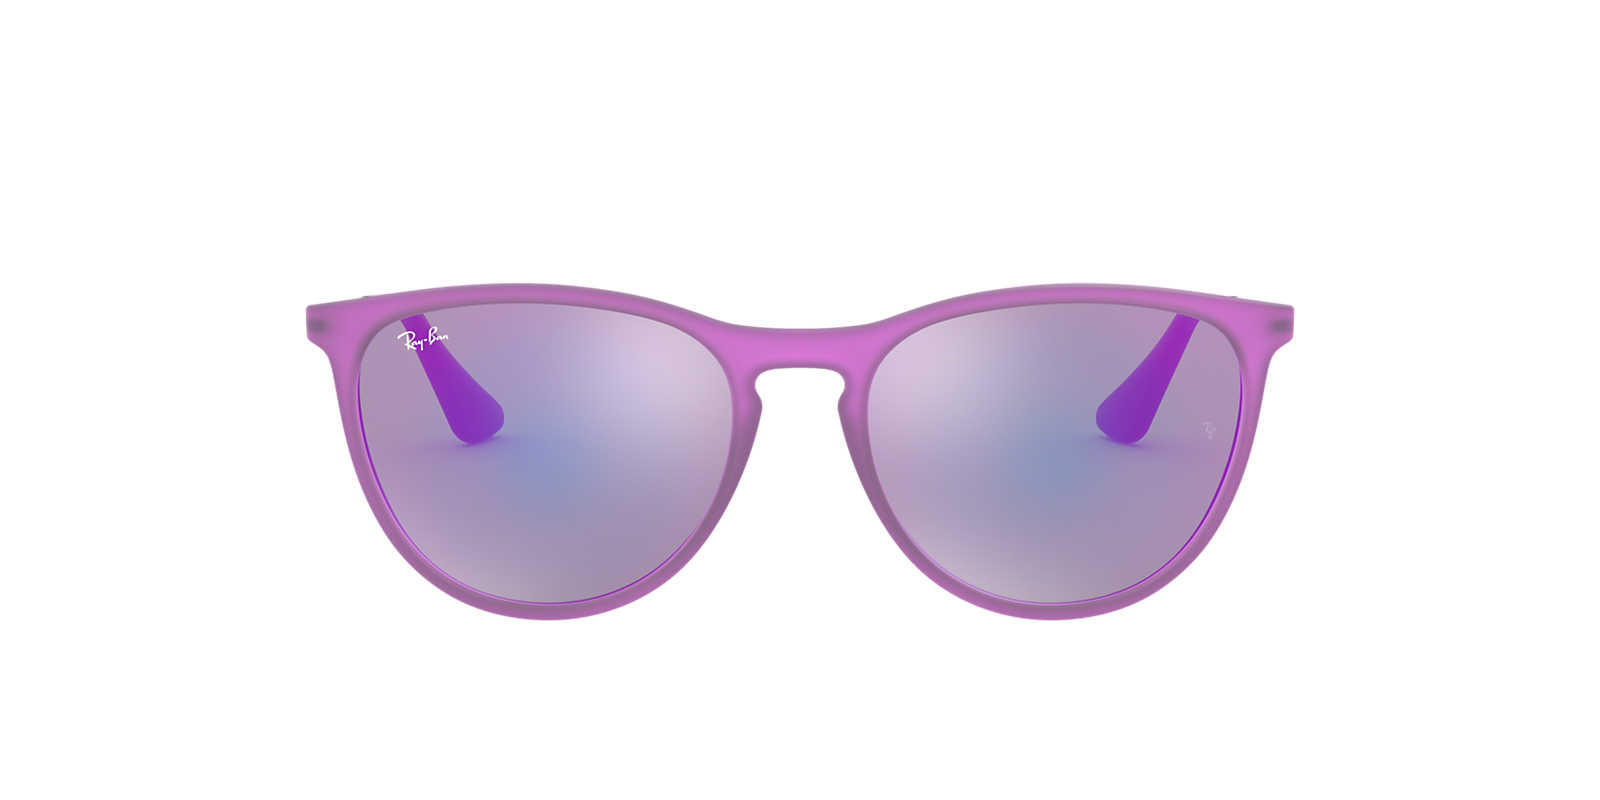 2019 cheap ray ban sunglasses china discount